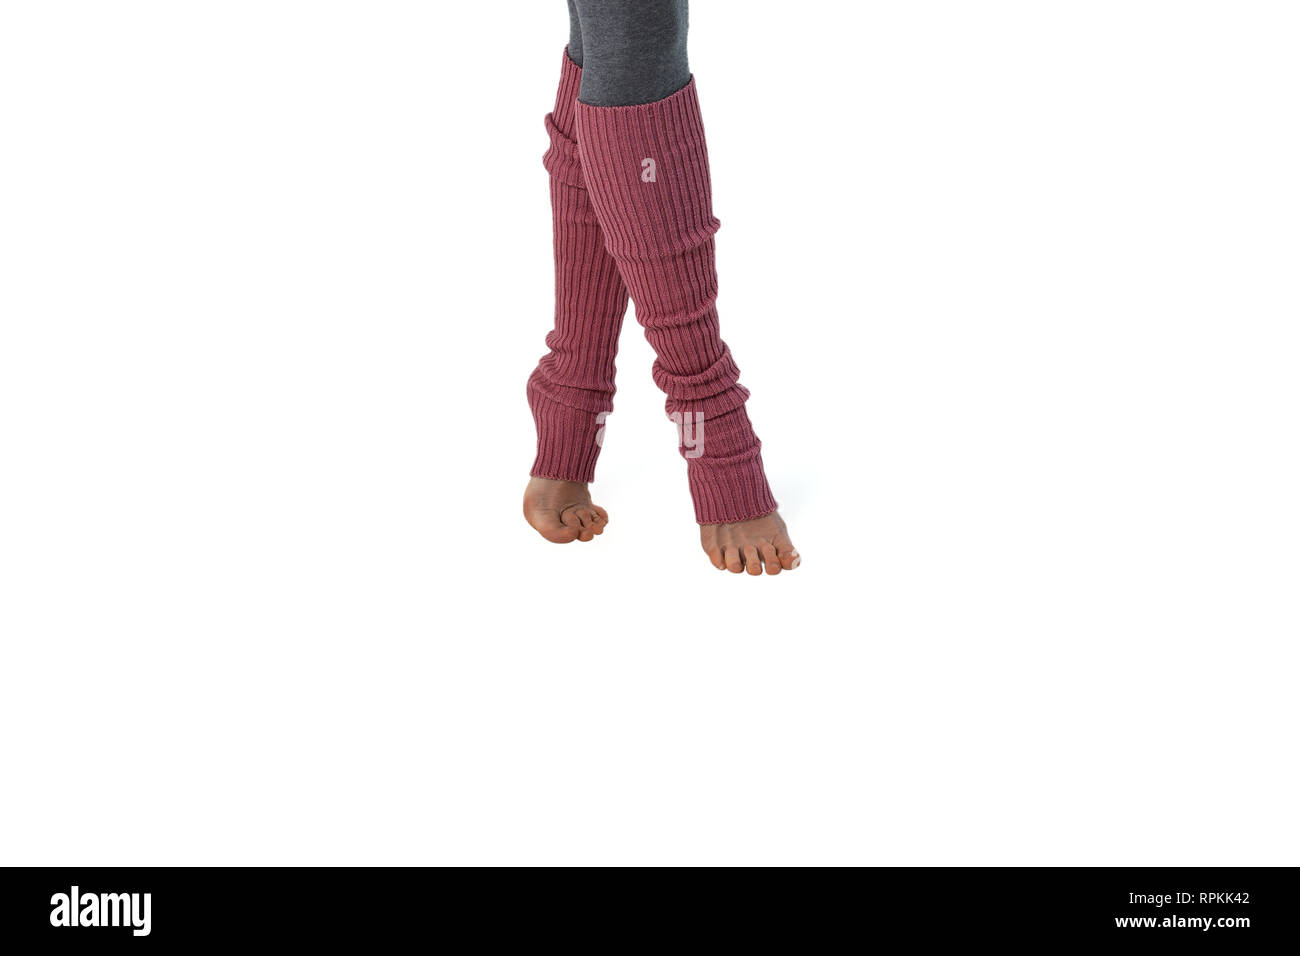 Jeune Fille en rose jambières, engagés dans pilates debout sur les doigts. Fond blanc. Banque D'Images